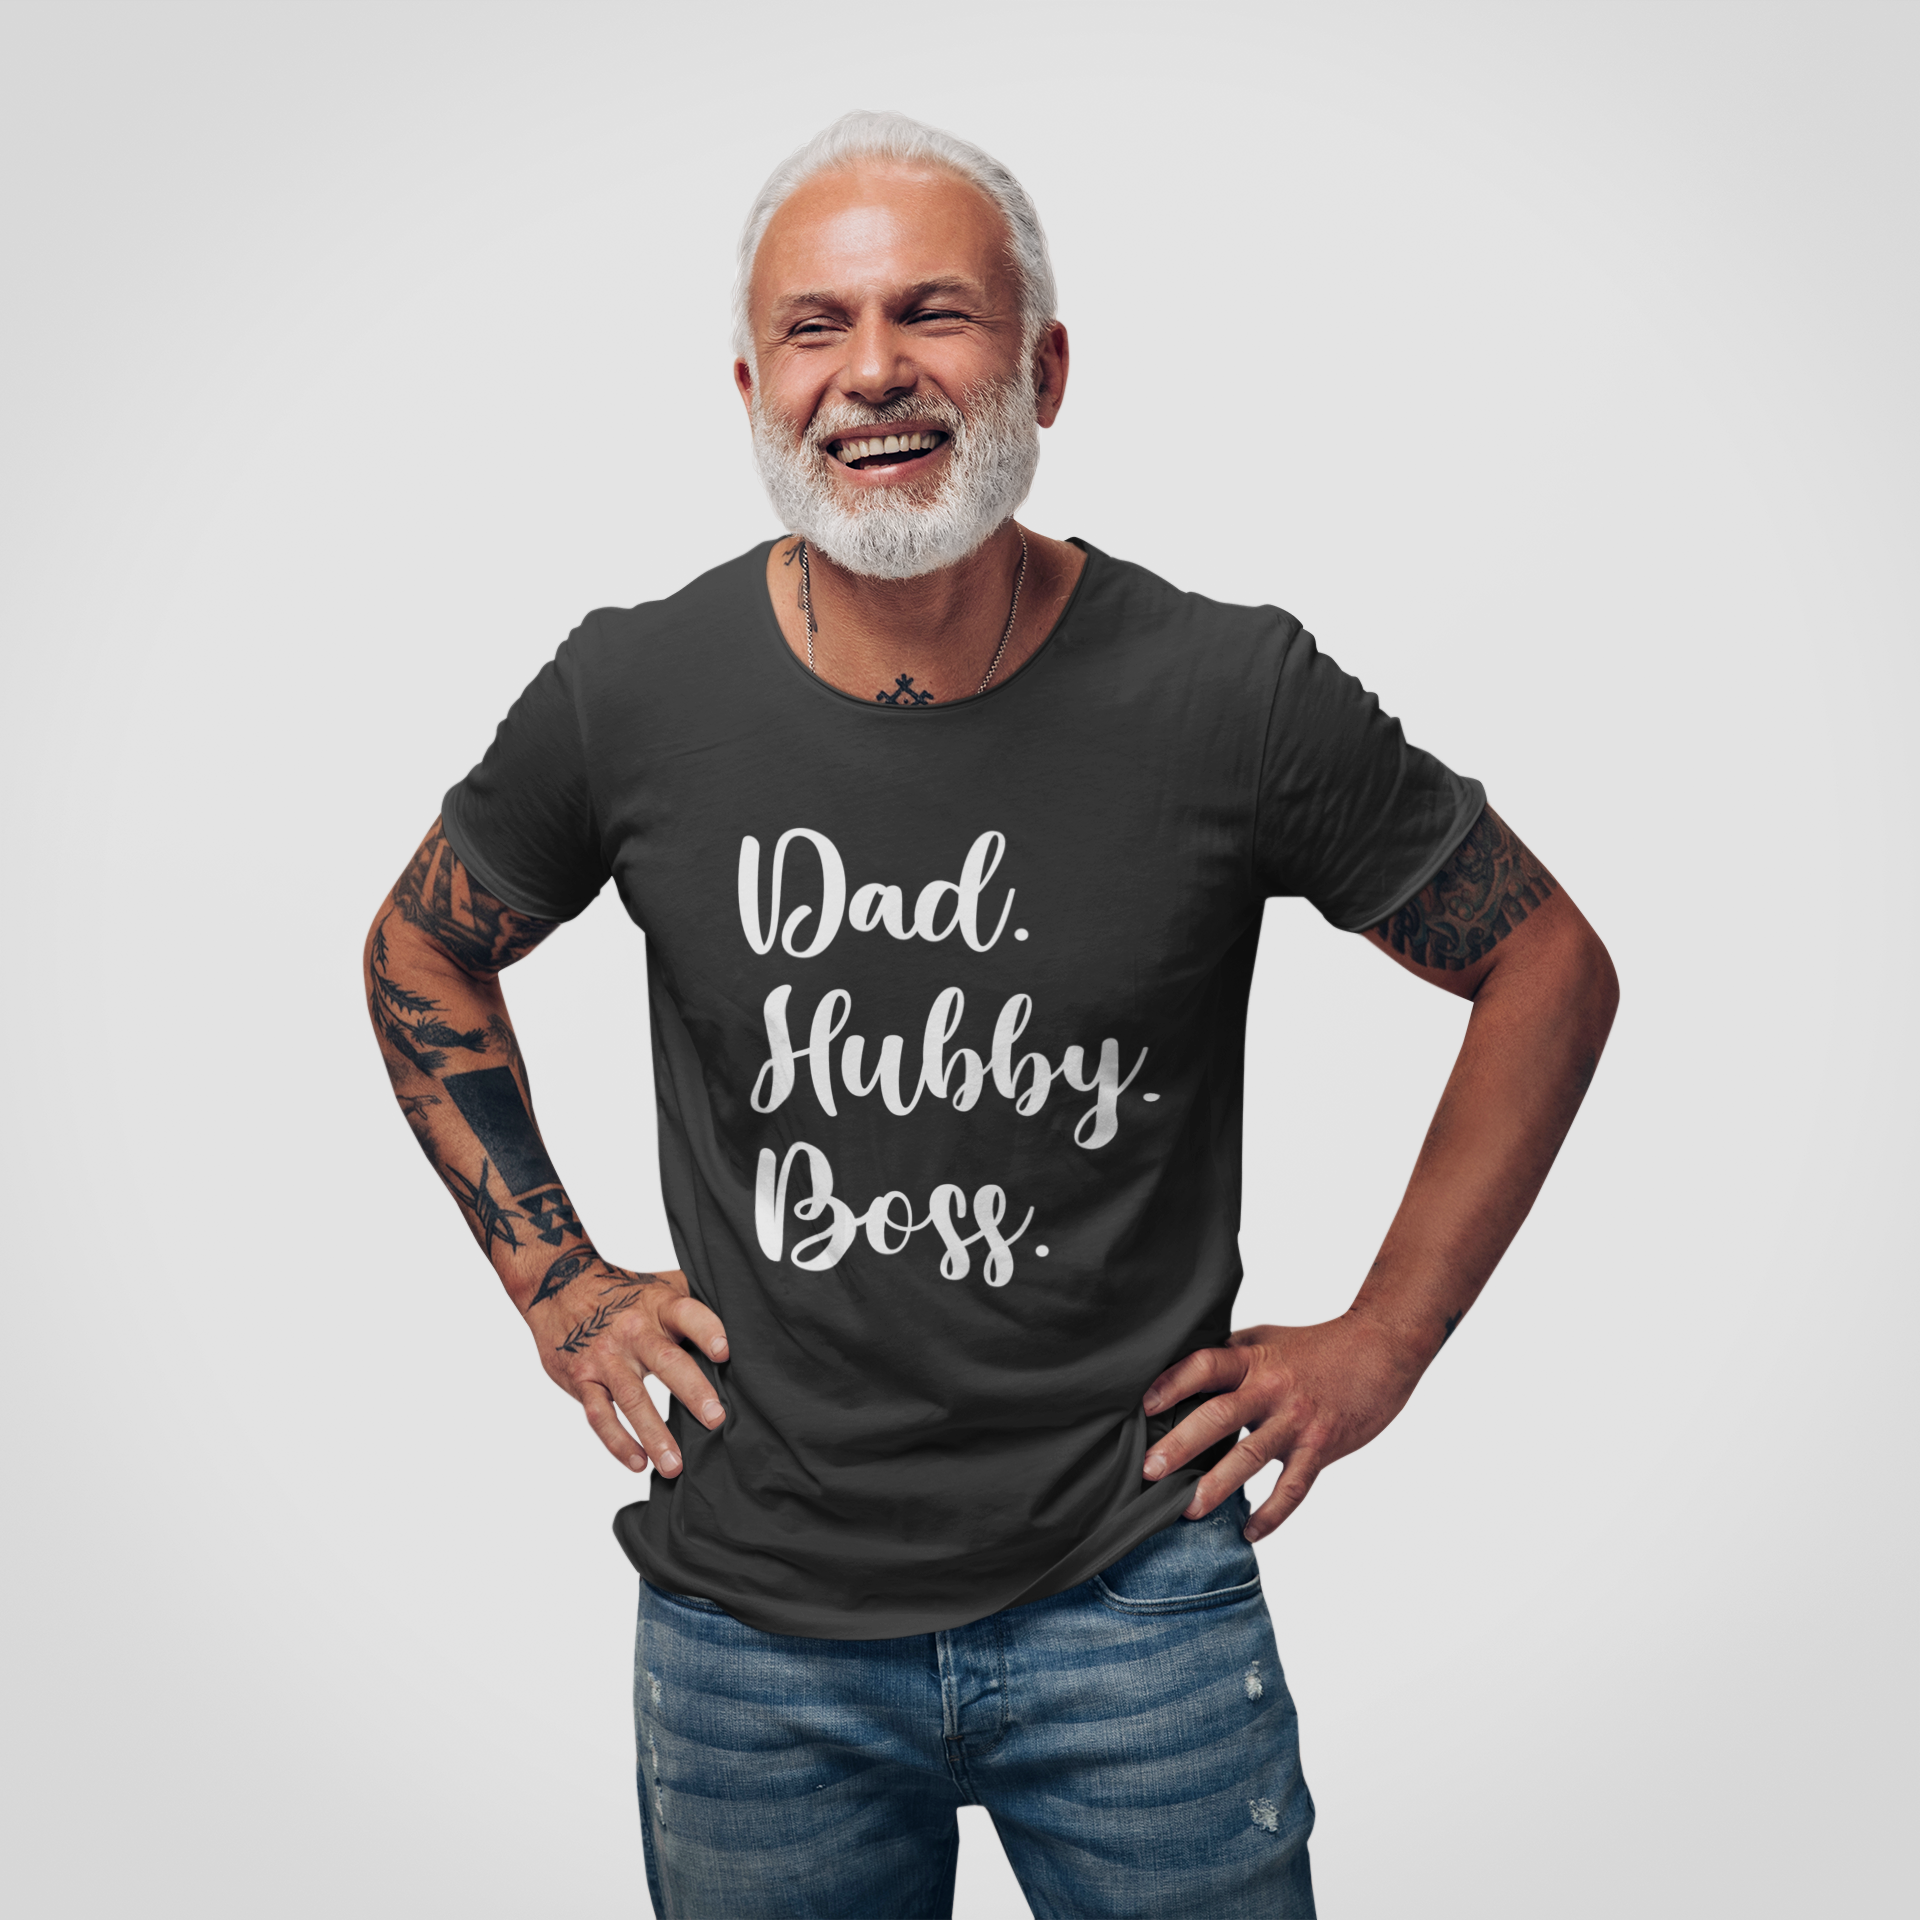 stylisches herren tshirt für Vatertag als geschenke für männer mit dad hubby wifey boss Aufschrift in schwarz